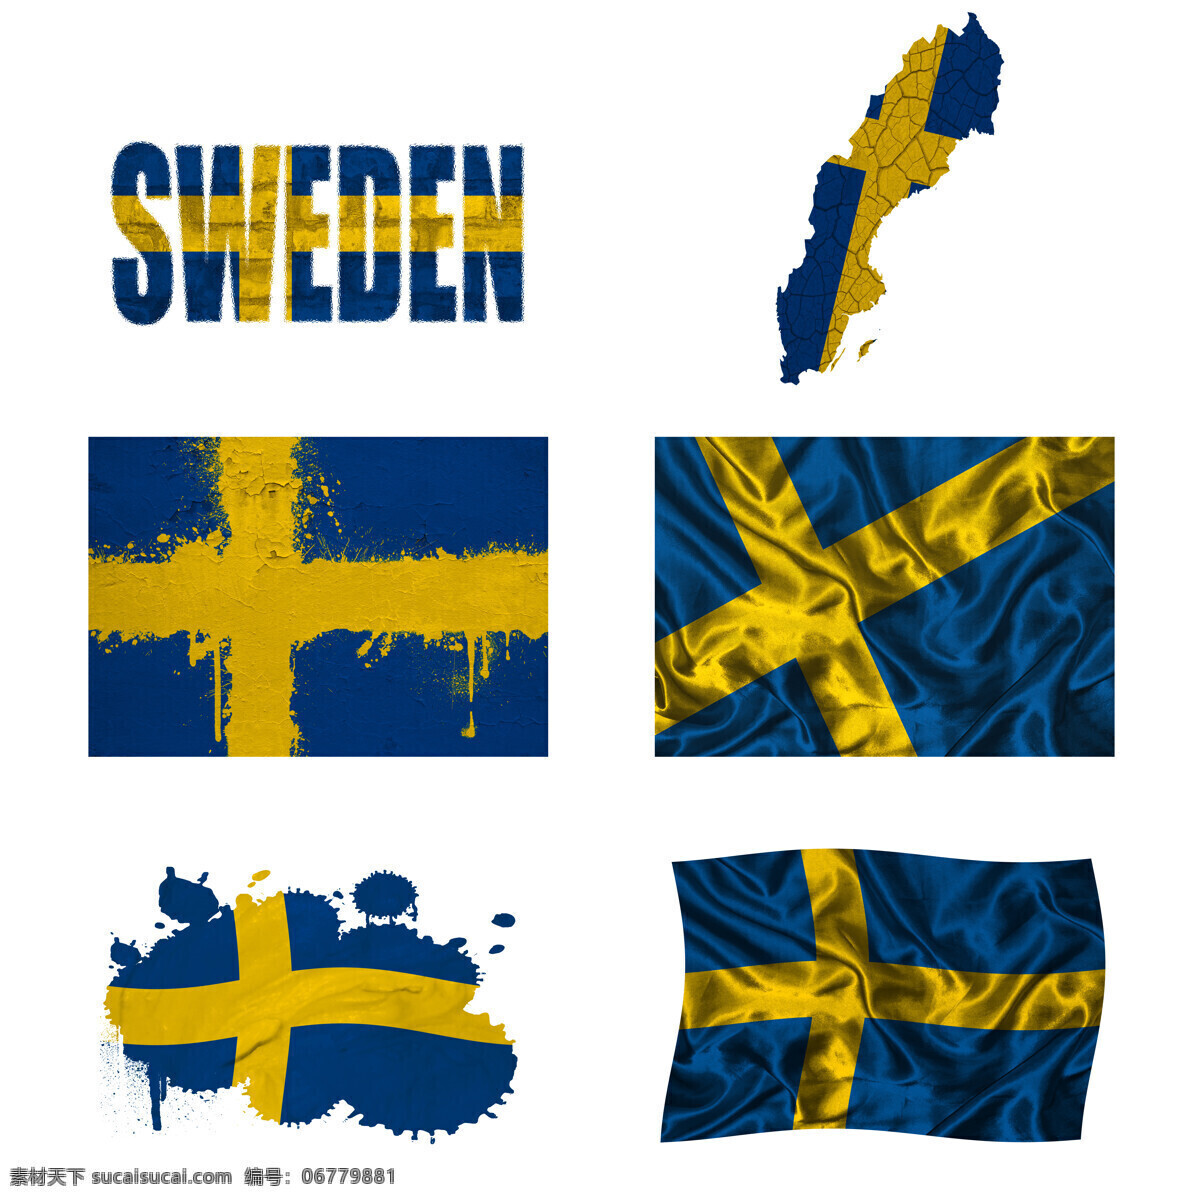 瑞典 国旗 瑞典国旗 地图 旗帜 国旗图案 其他类别 国旗图片 生活百科